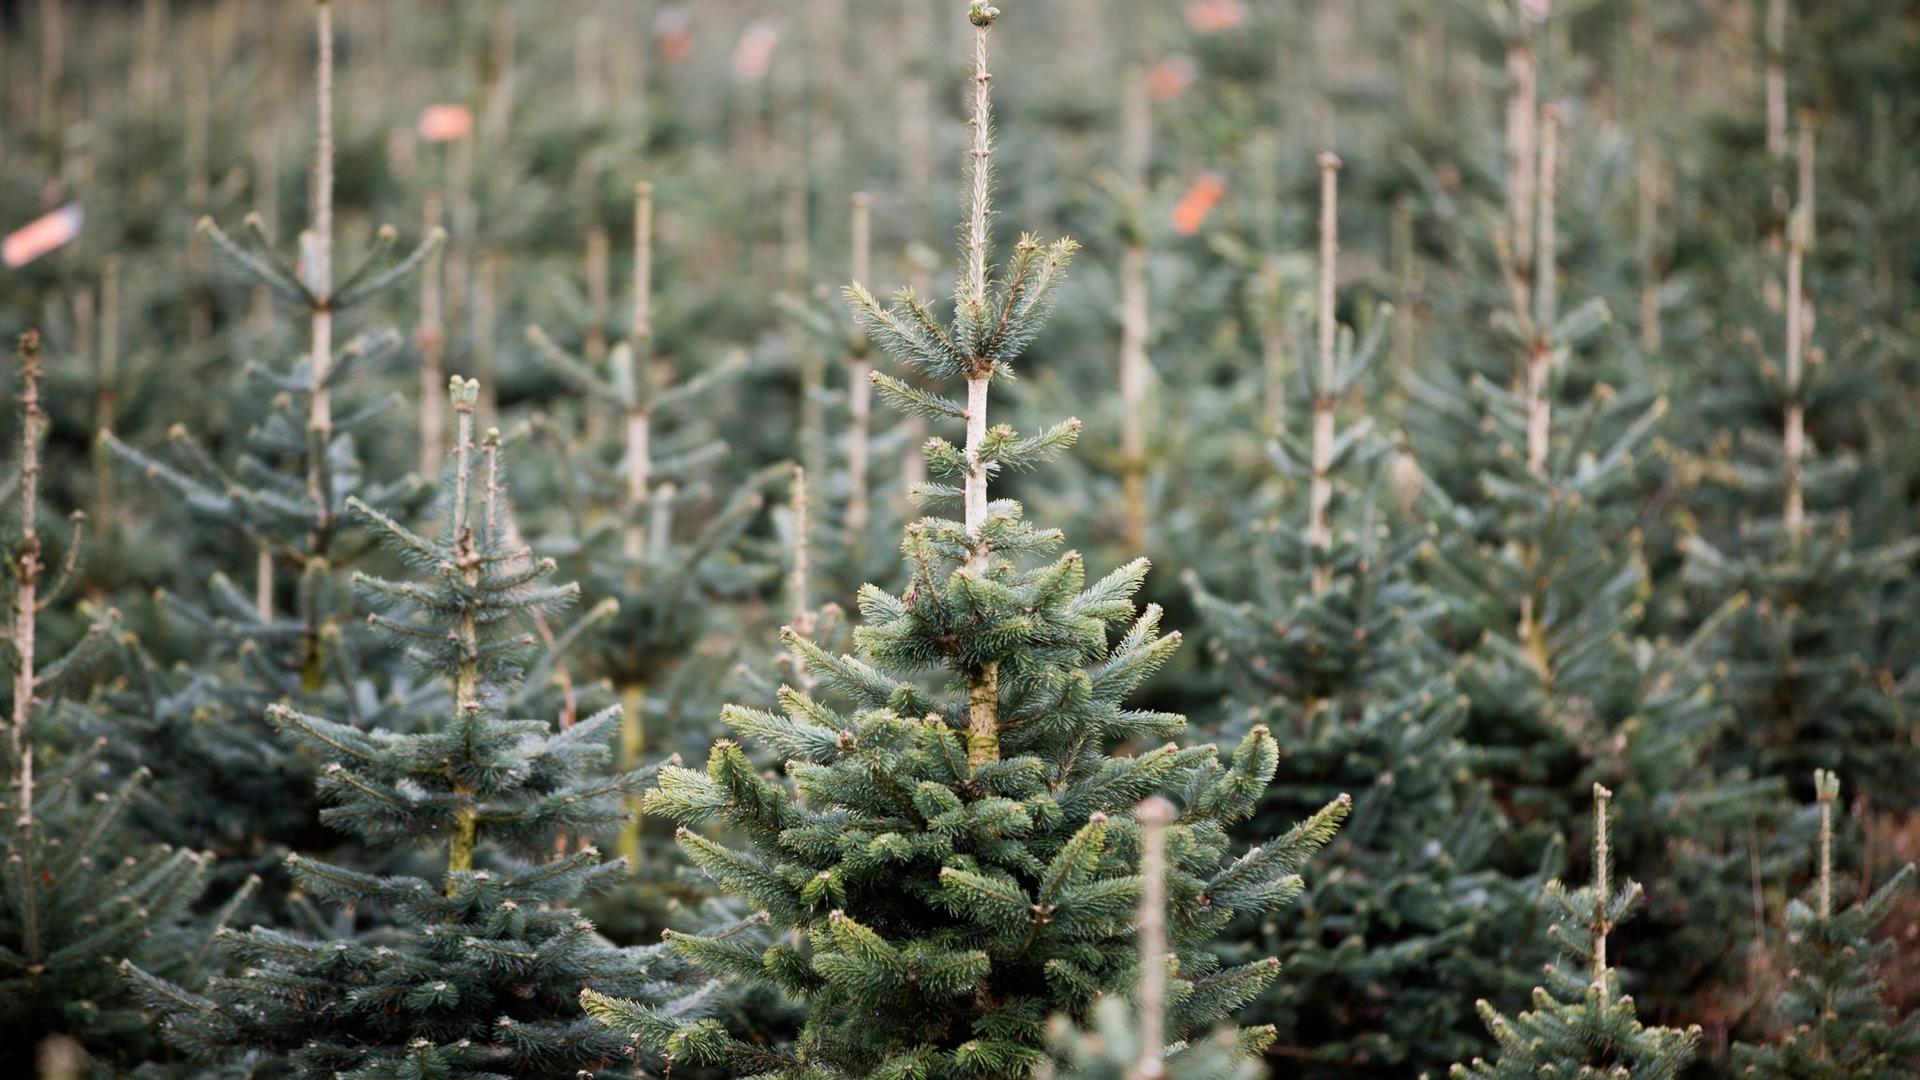 Nach Angaben des NRW-Landesverbandes Gartenbau stammt jeder dritte Weihnachtsbaum in Deutschland aus dem Sauerland.